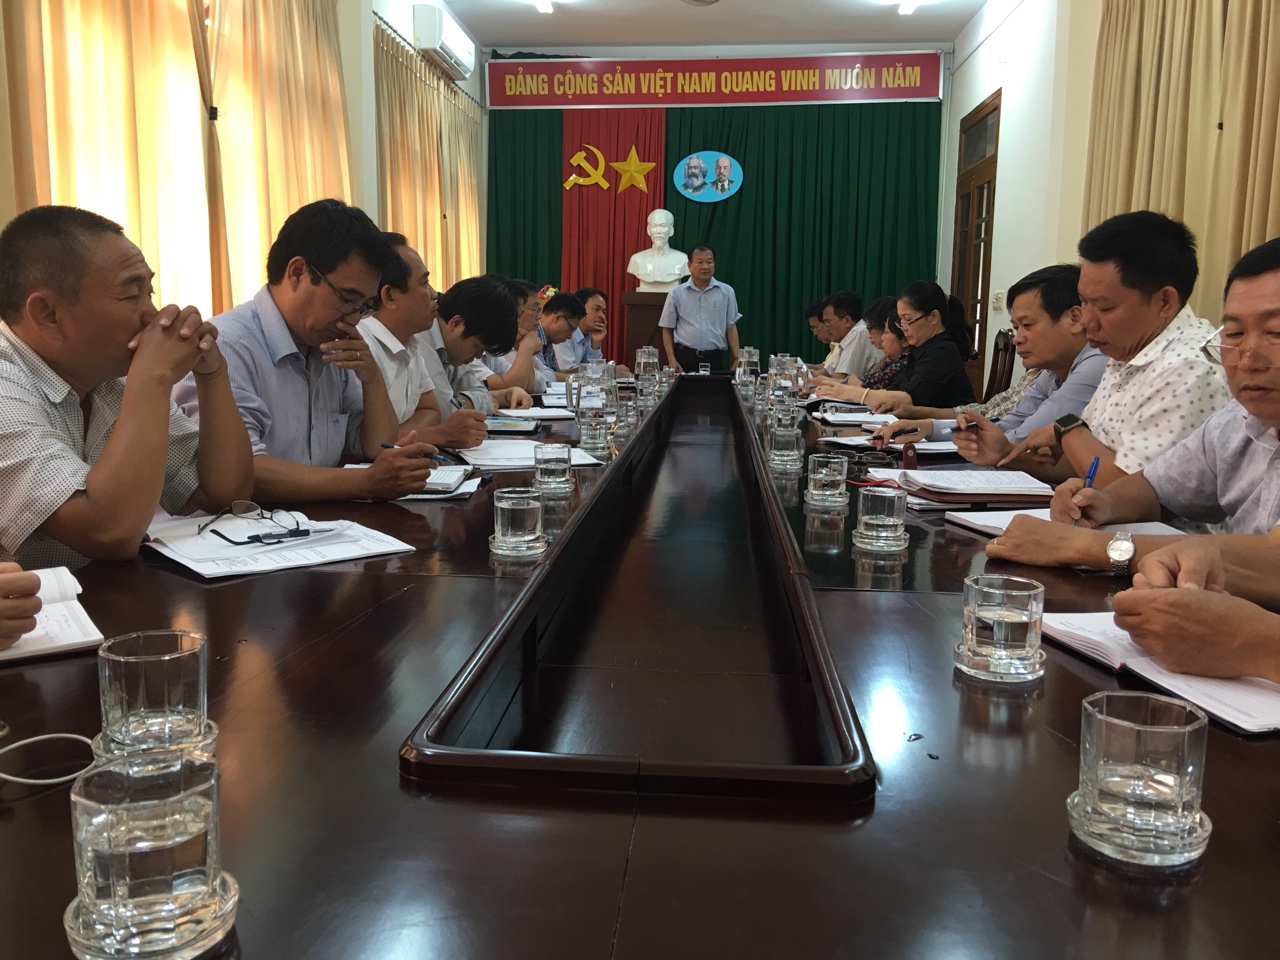 Sở Công Thương Đắk Lắk nói không với chai nhựa tại các cuộc họp